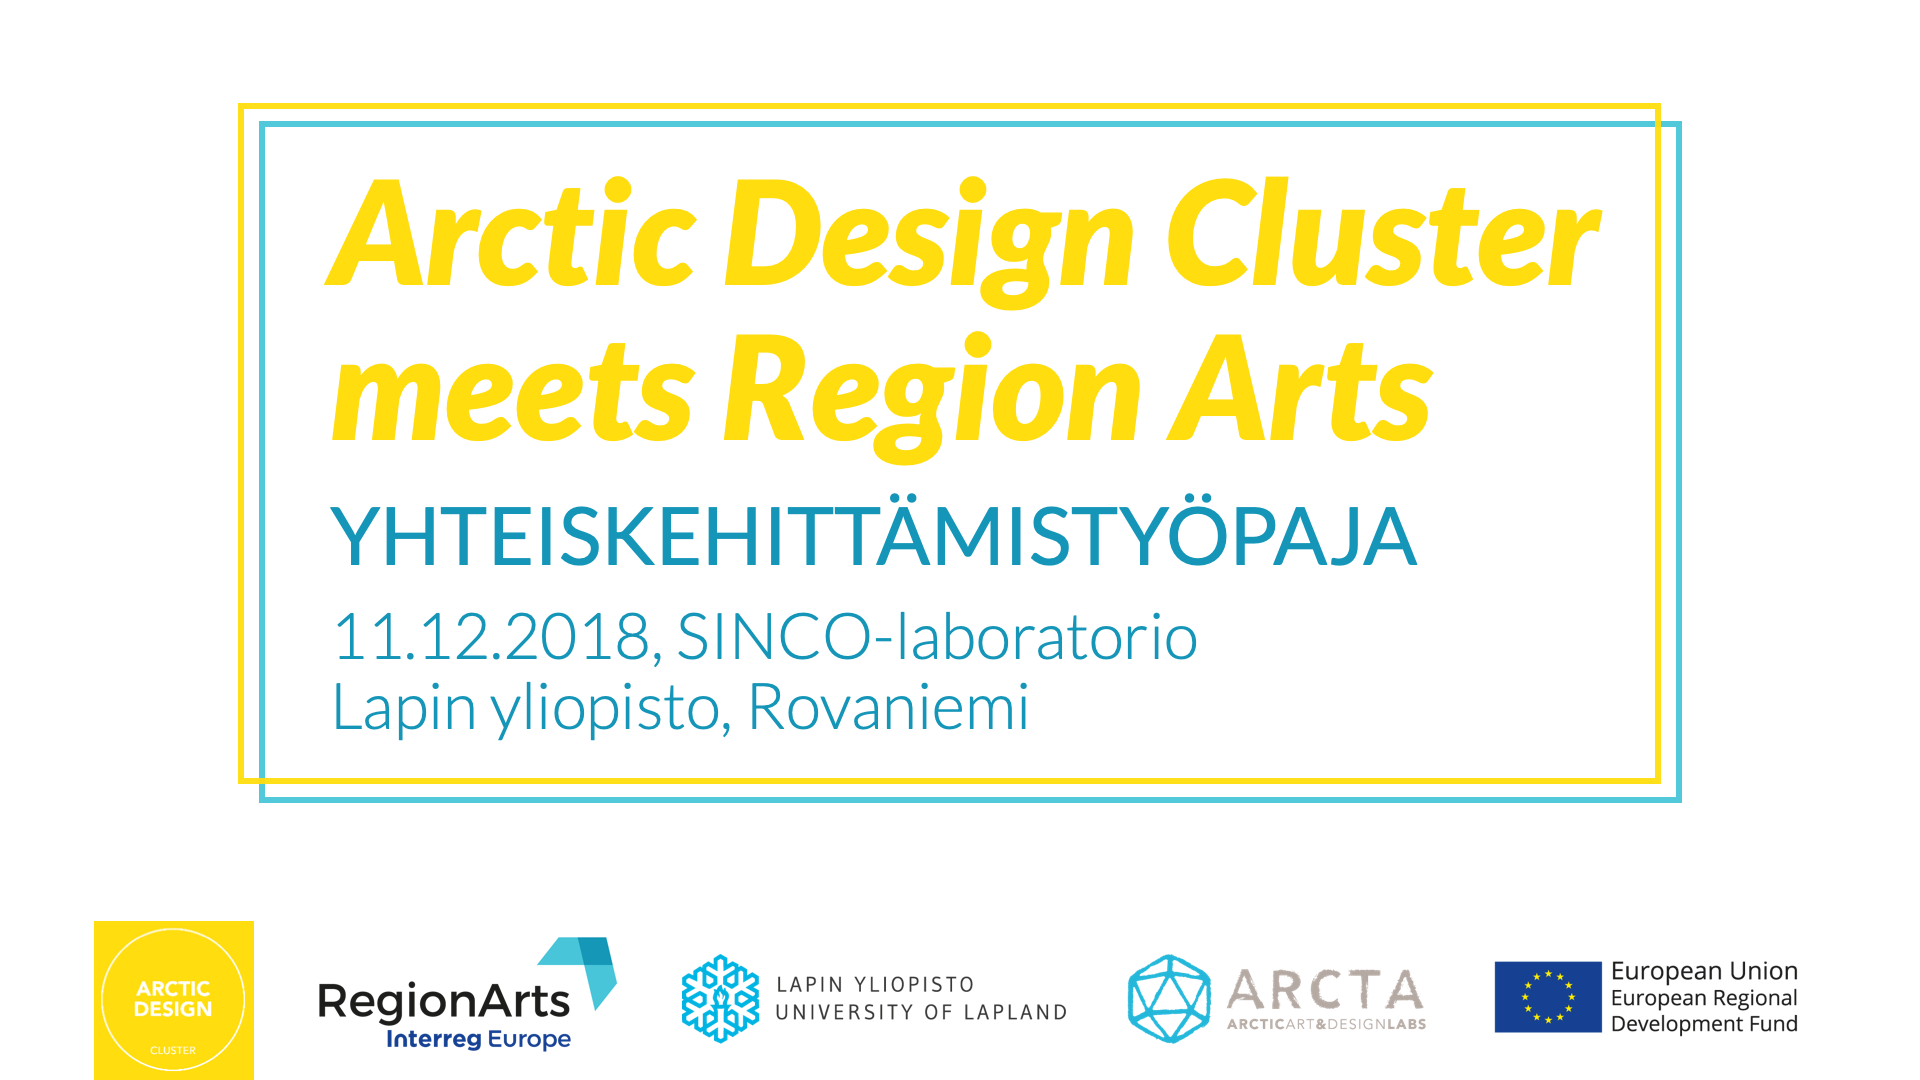 Arctic Design Cluster meets RegionArts